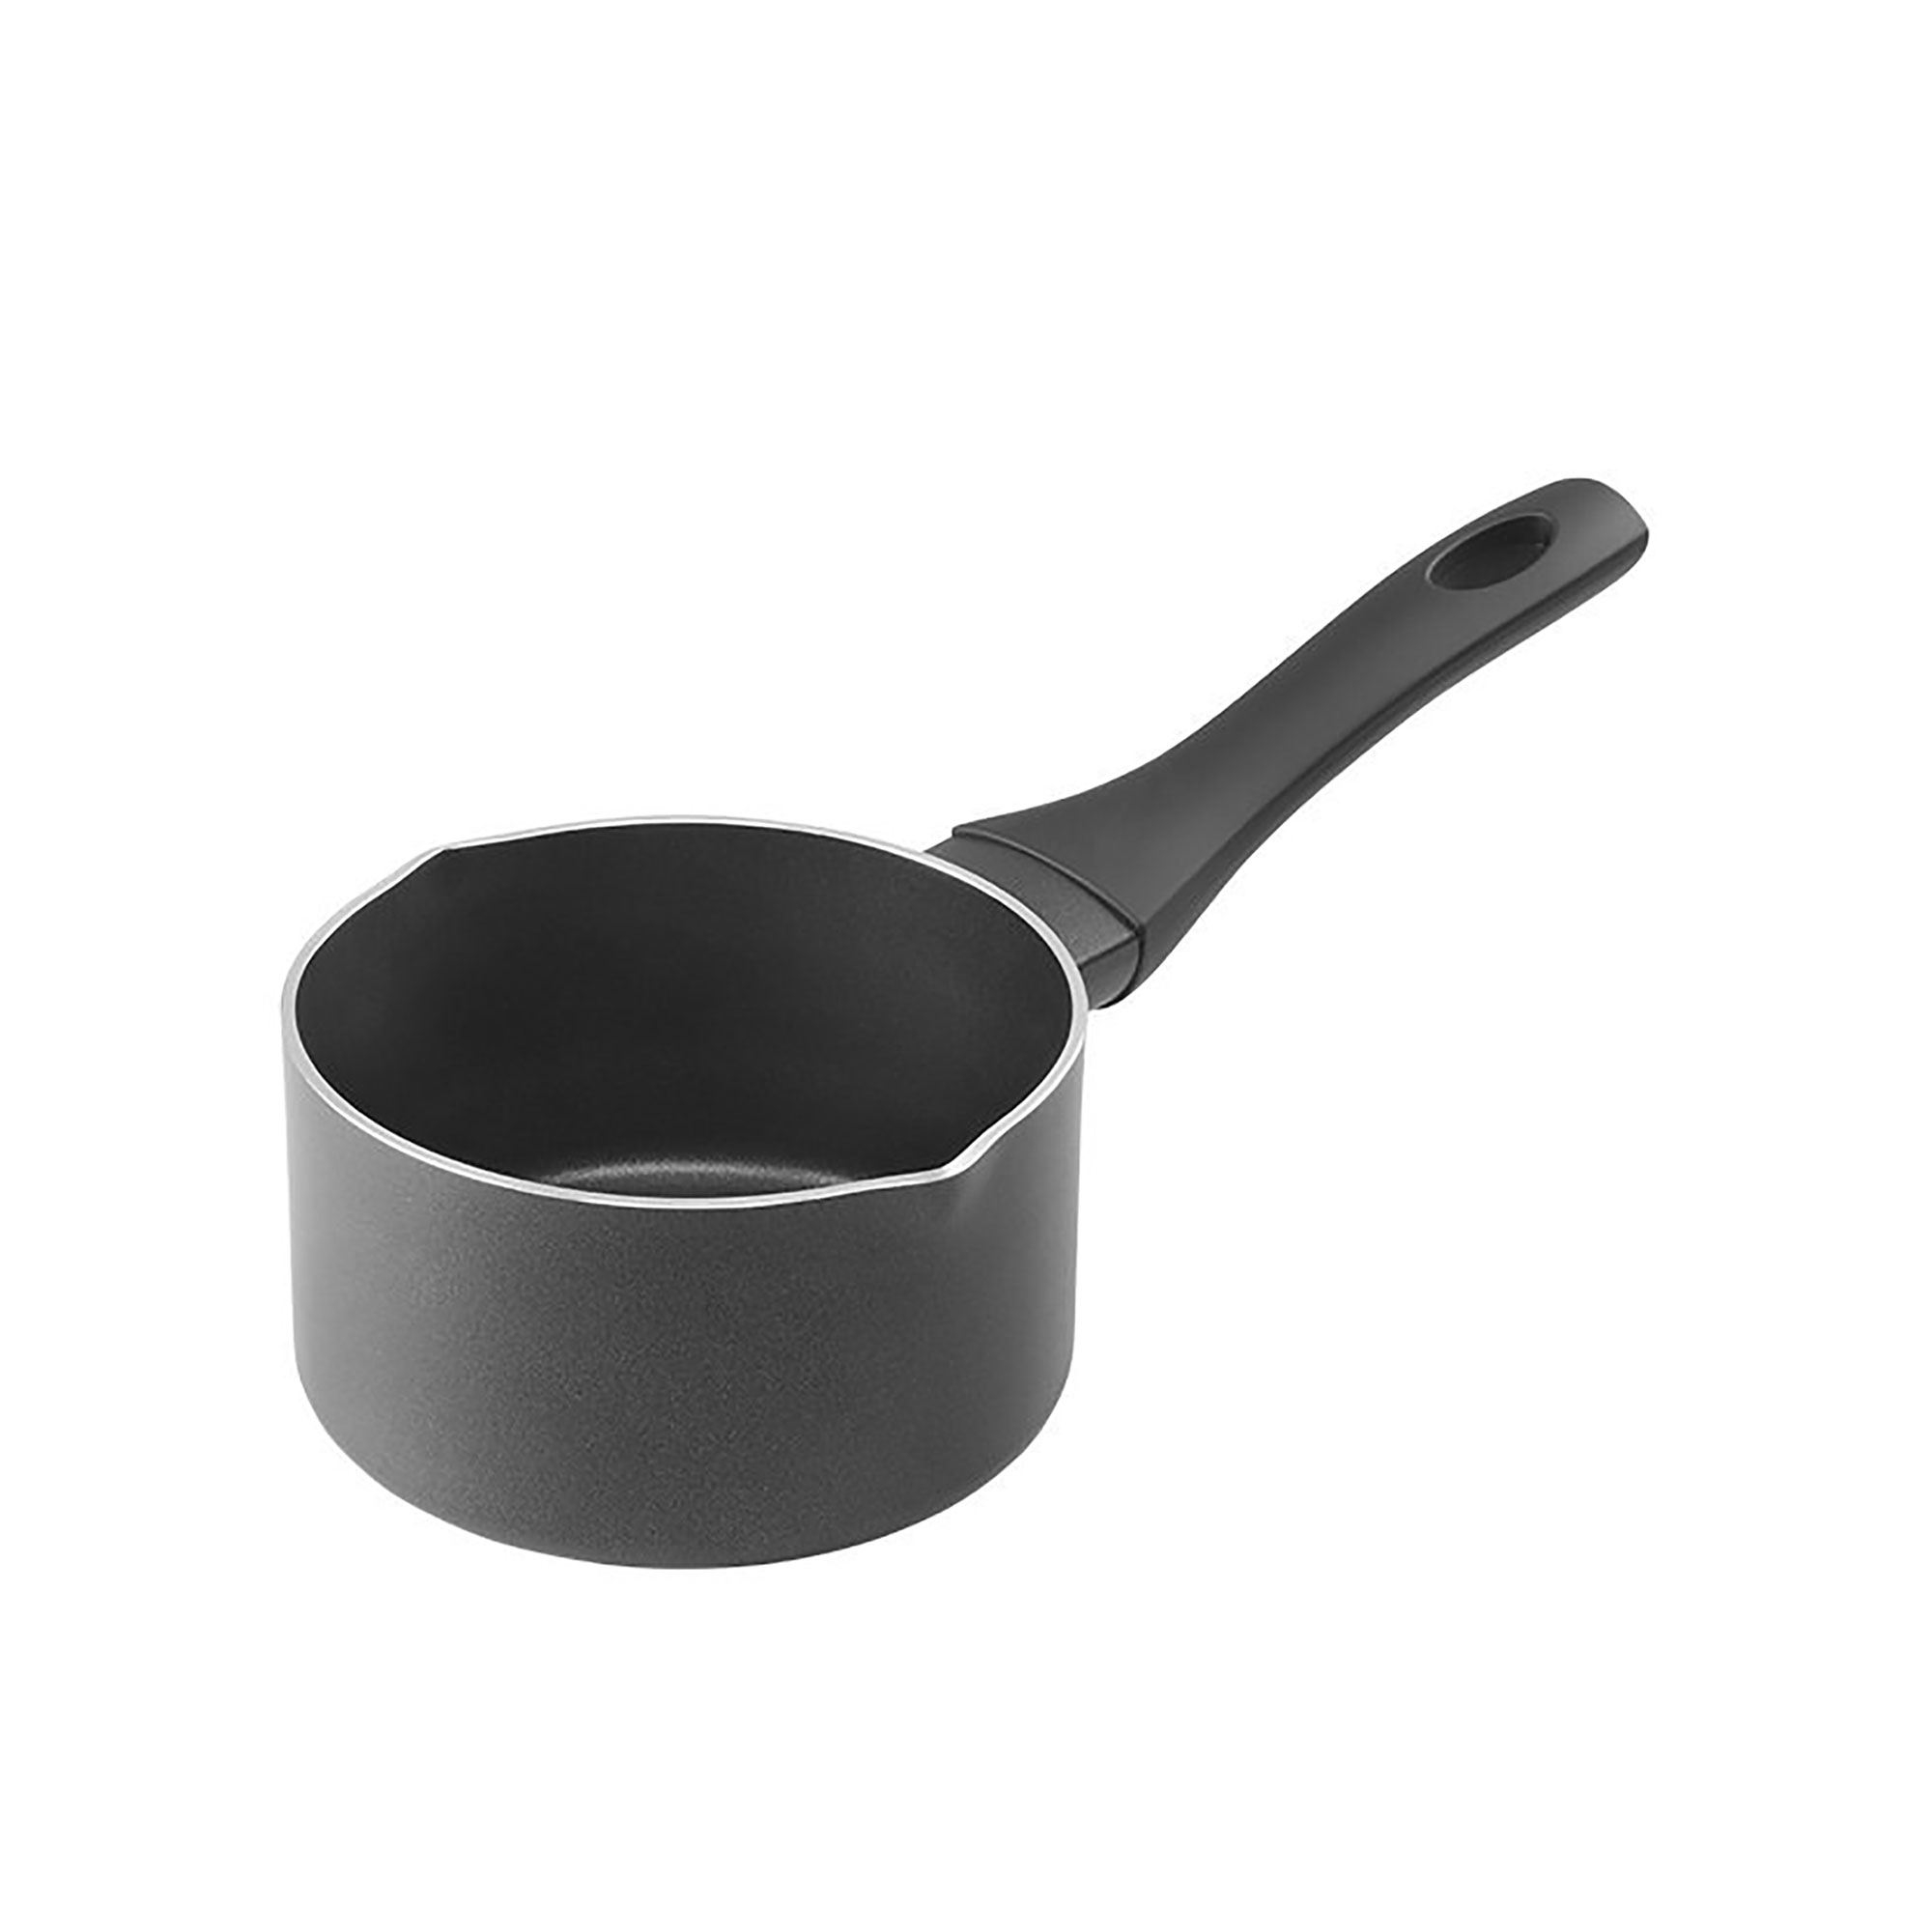 Pyrolux Pyrosmart Milk Pan with Pouring Spout 14cm - 1L Image 1